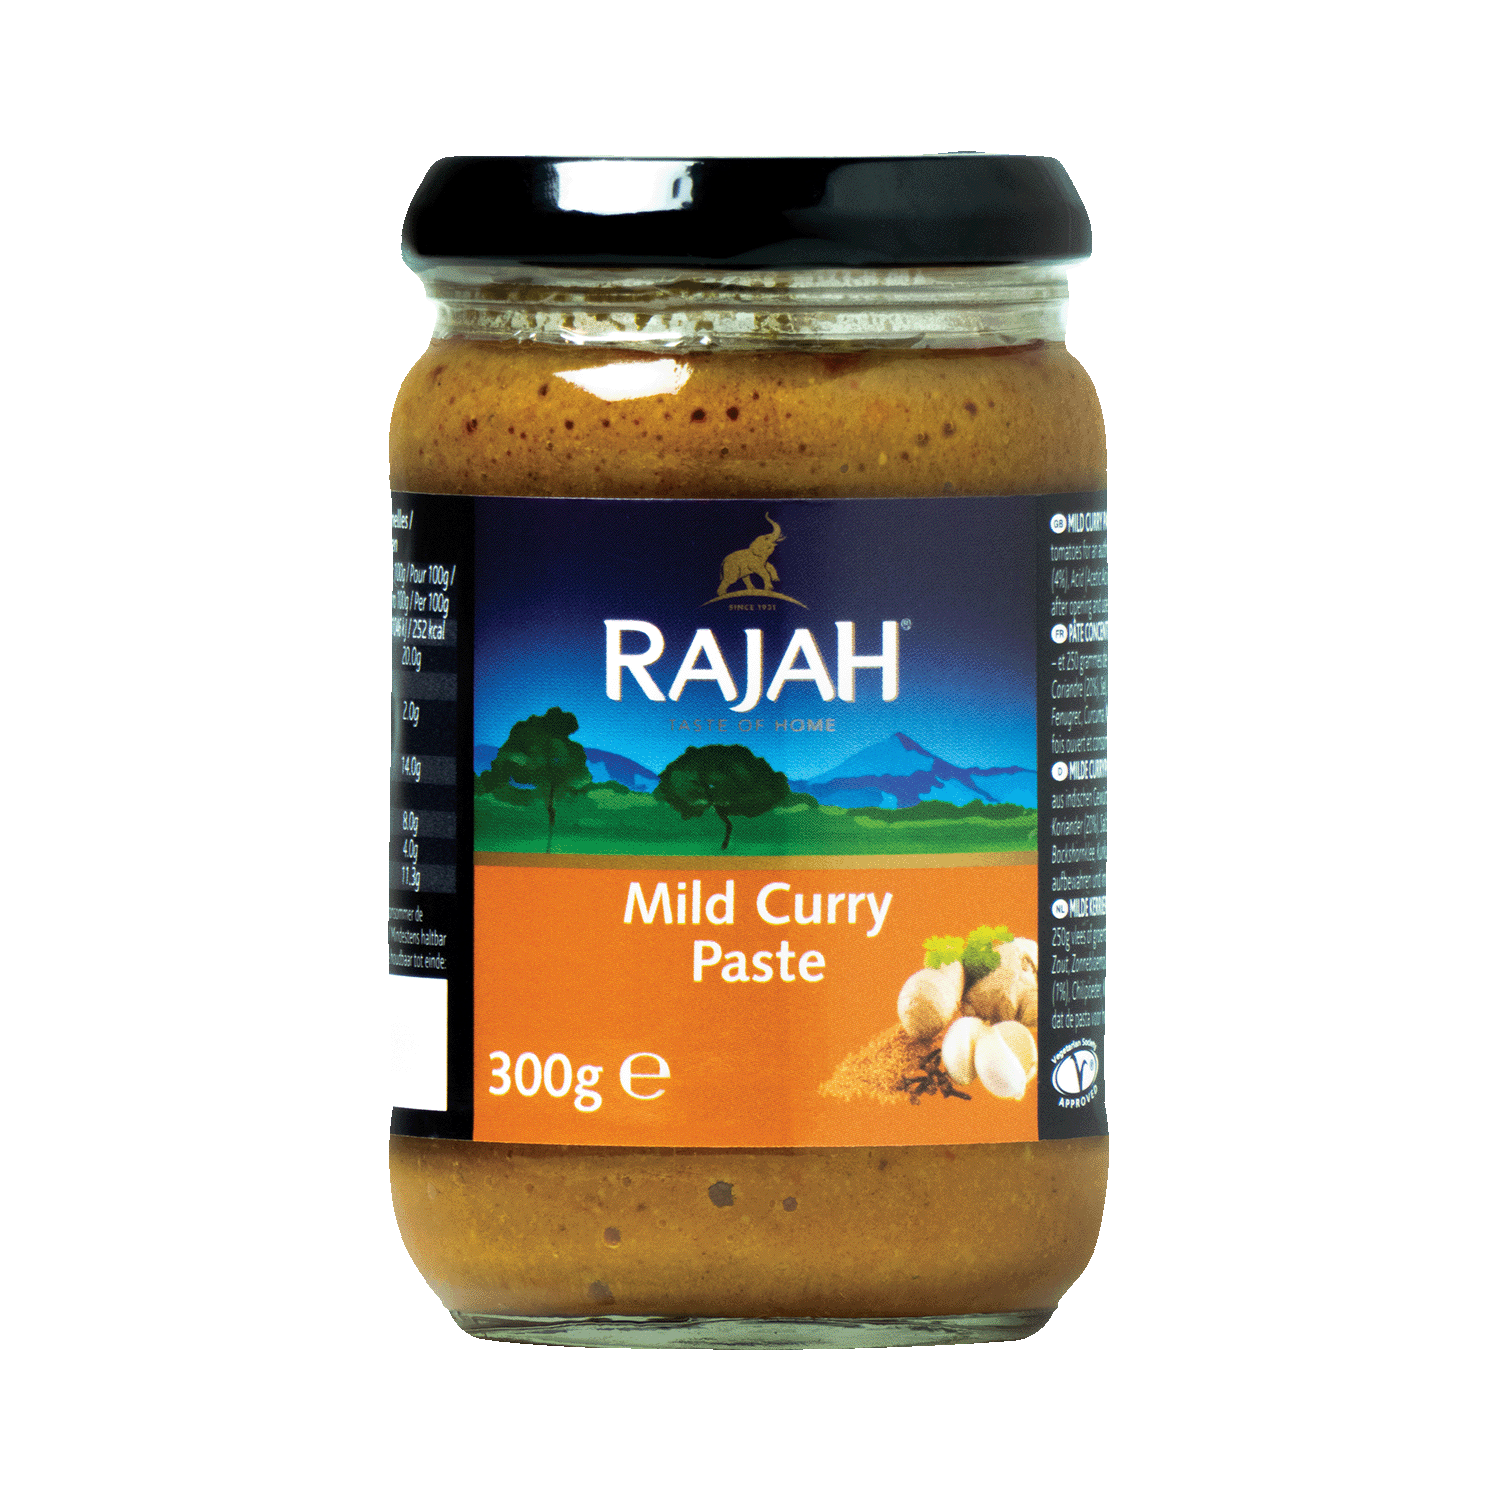 Mild curry paste, 300g